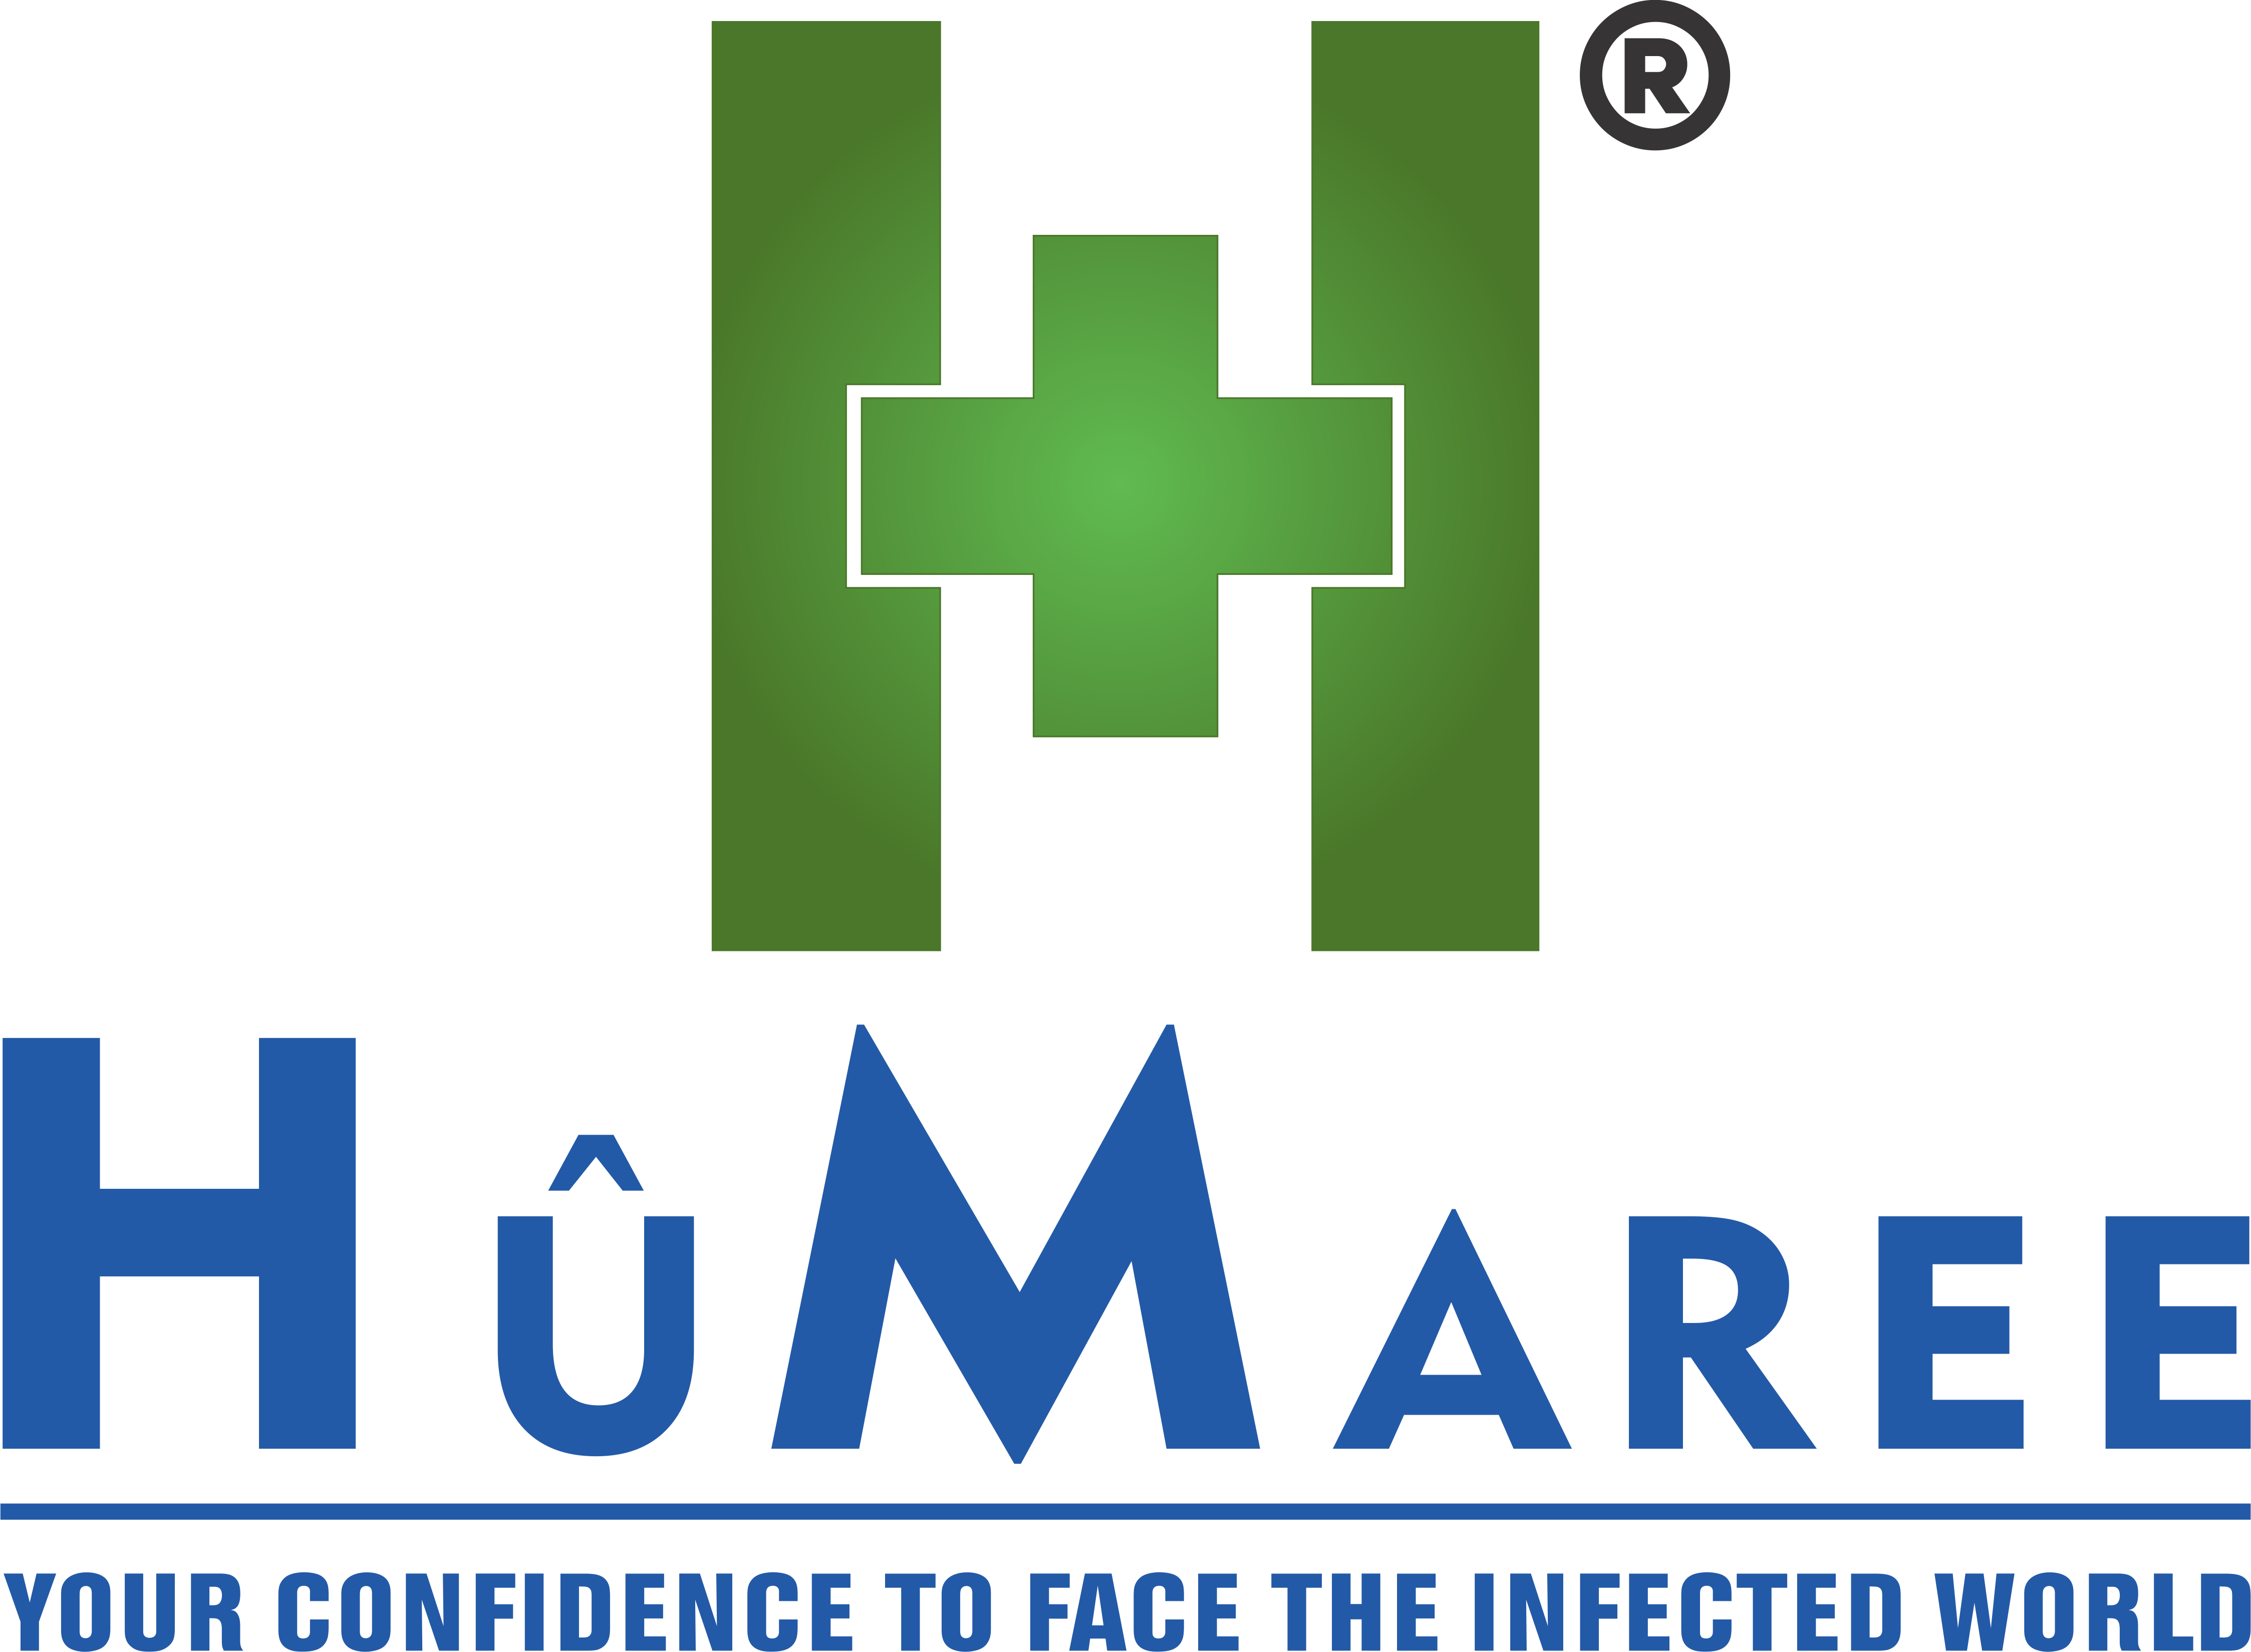 www.humaree.com